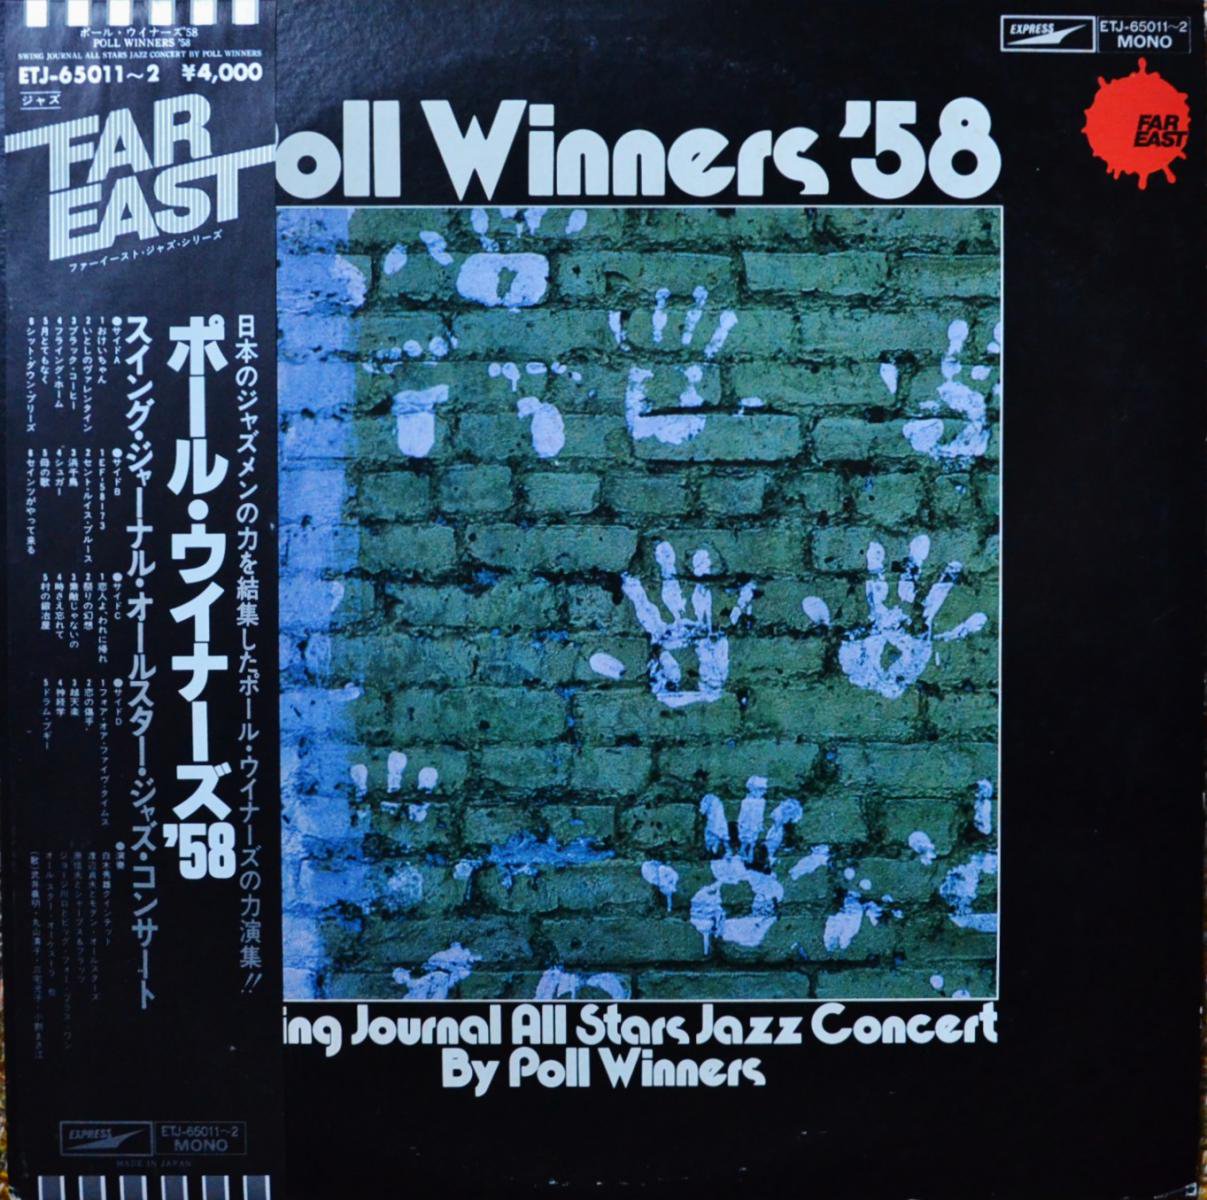 ポール・ウイナーズ'58 POLL WINNERS'58 / スイング・ジャーナル・オールスター・ジャズ・コンサート (2LP)